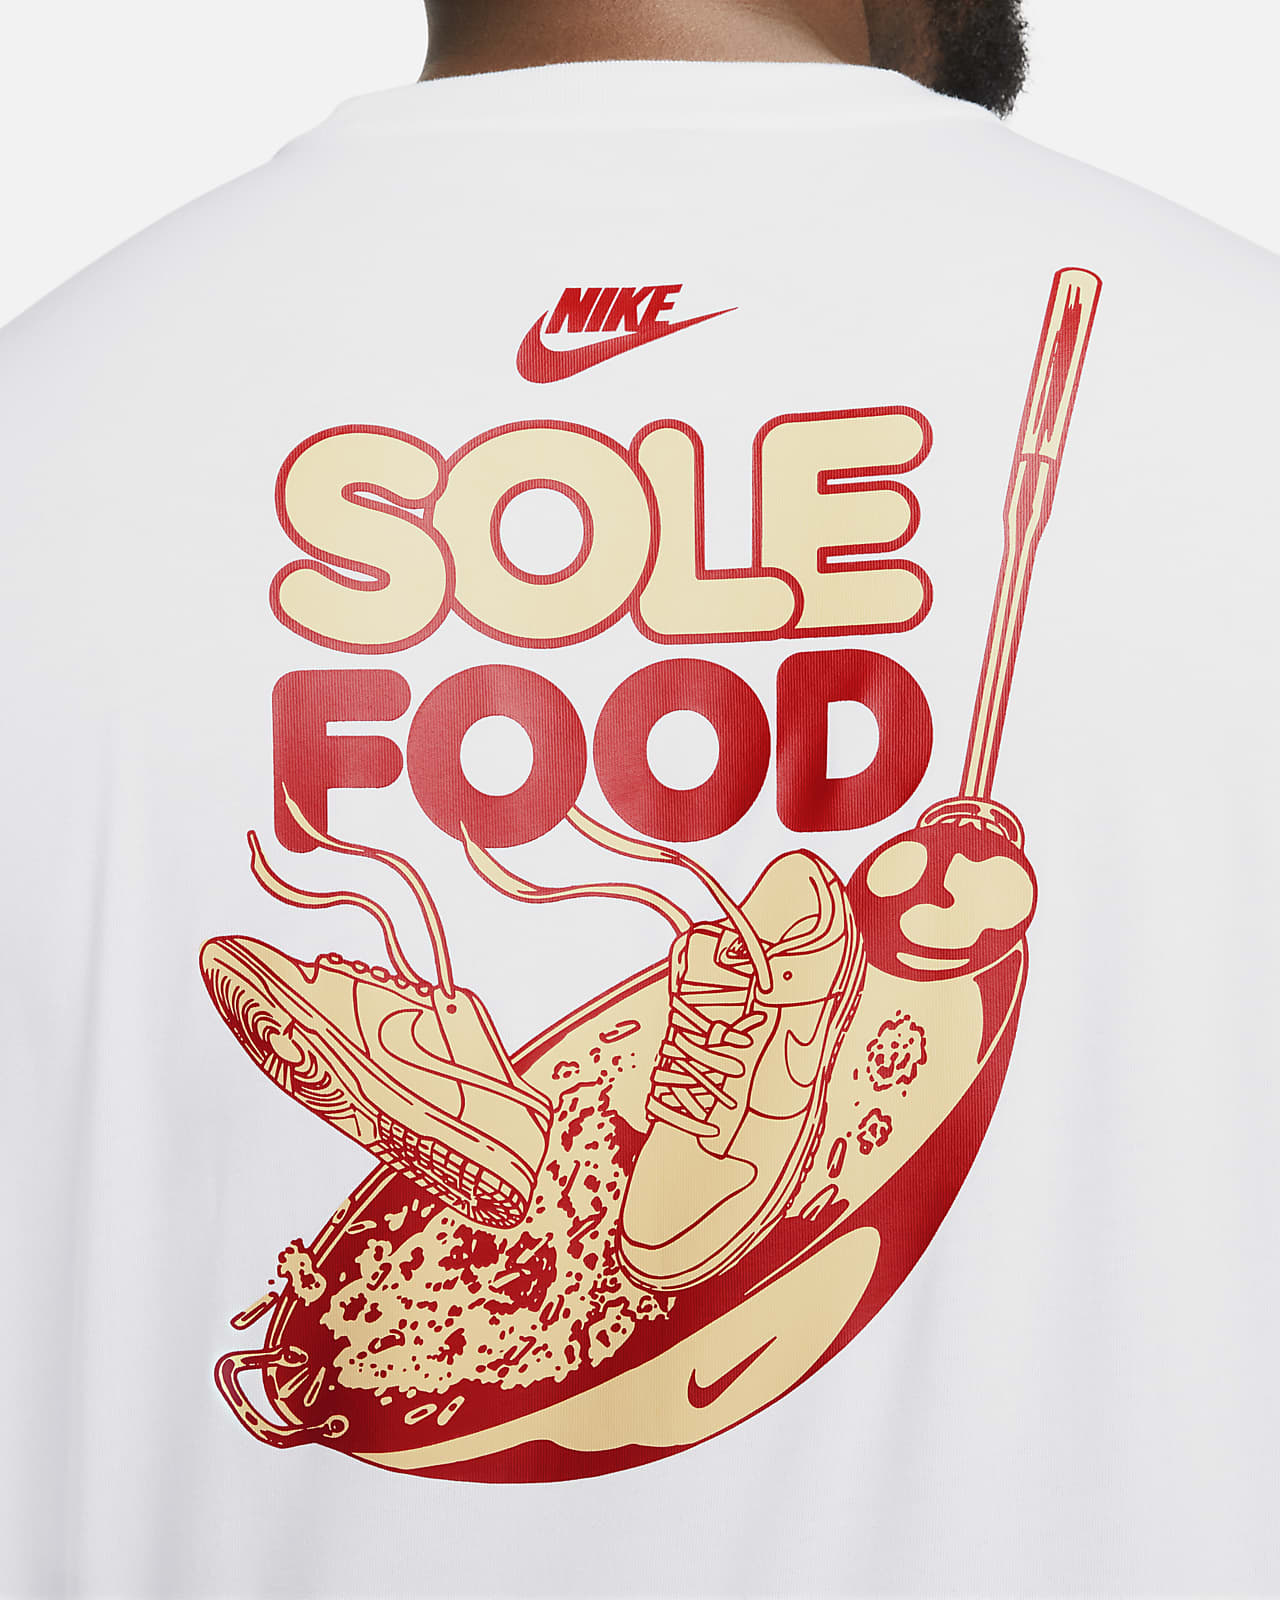 Nike T-Shirts : Buy Nike Boys White Printed T-shirt Online